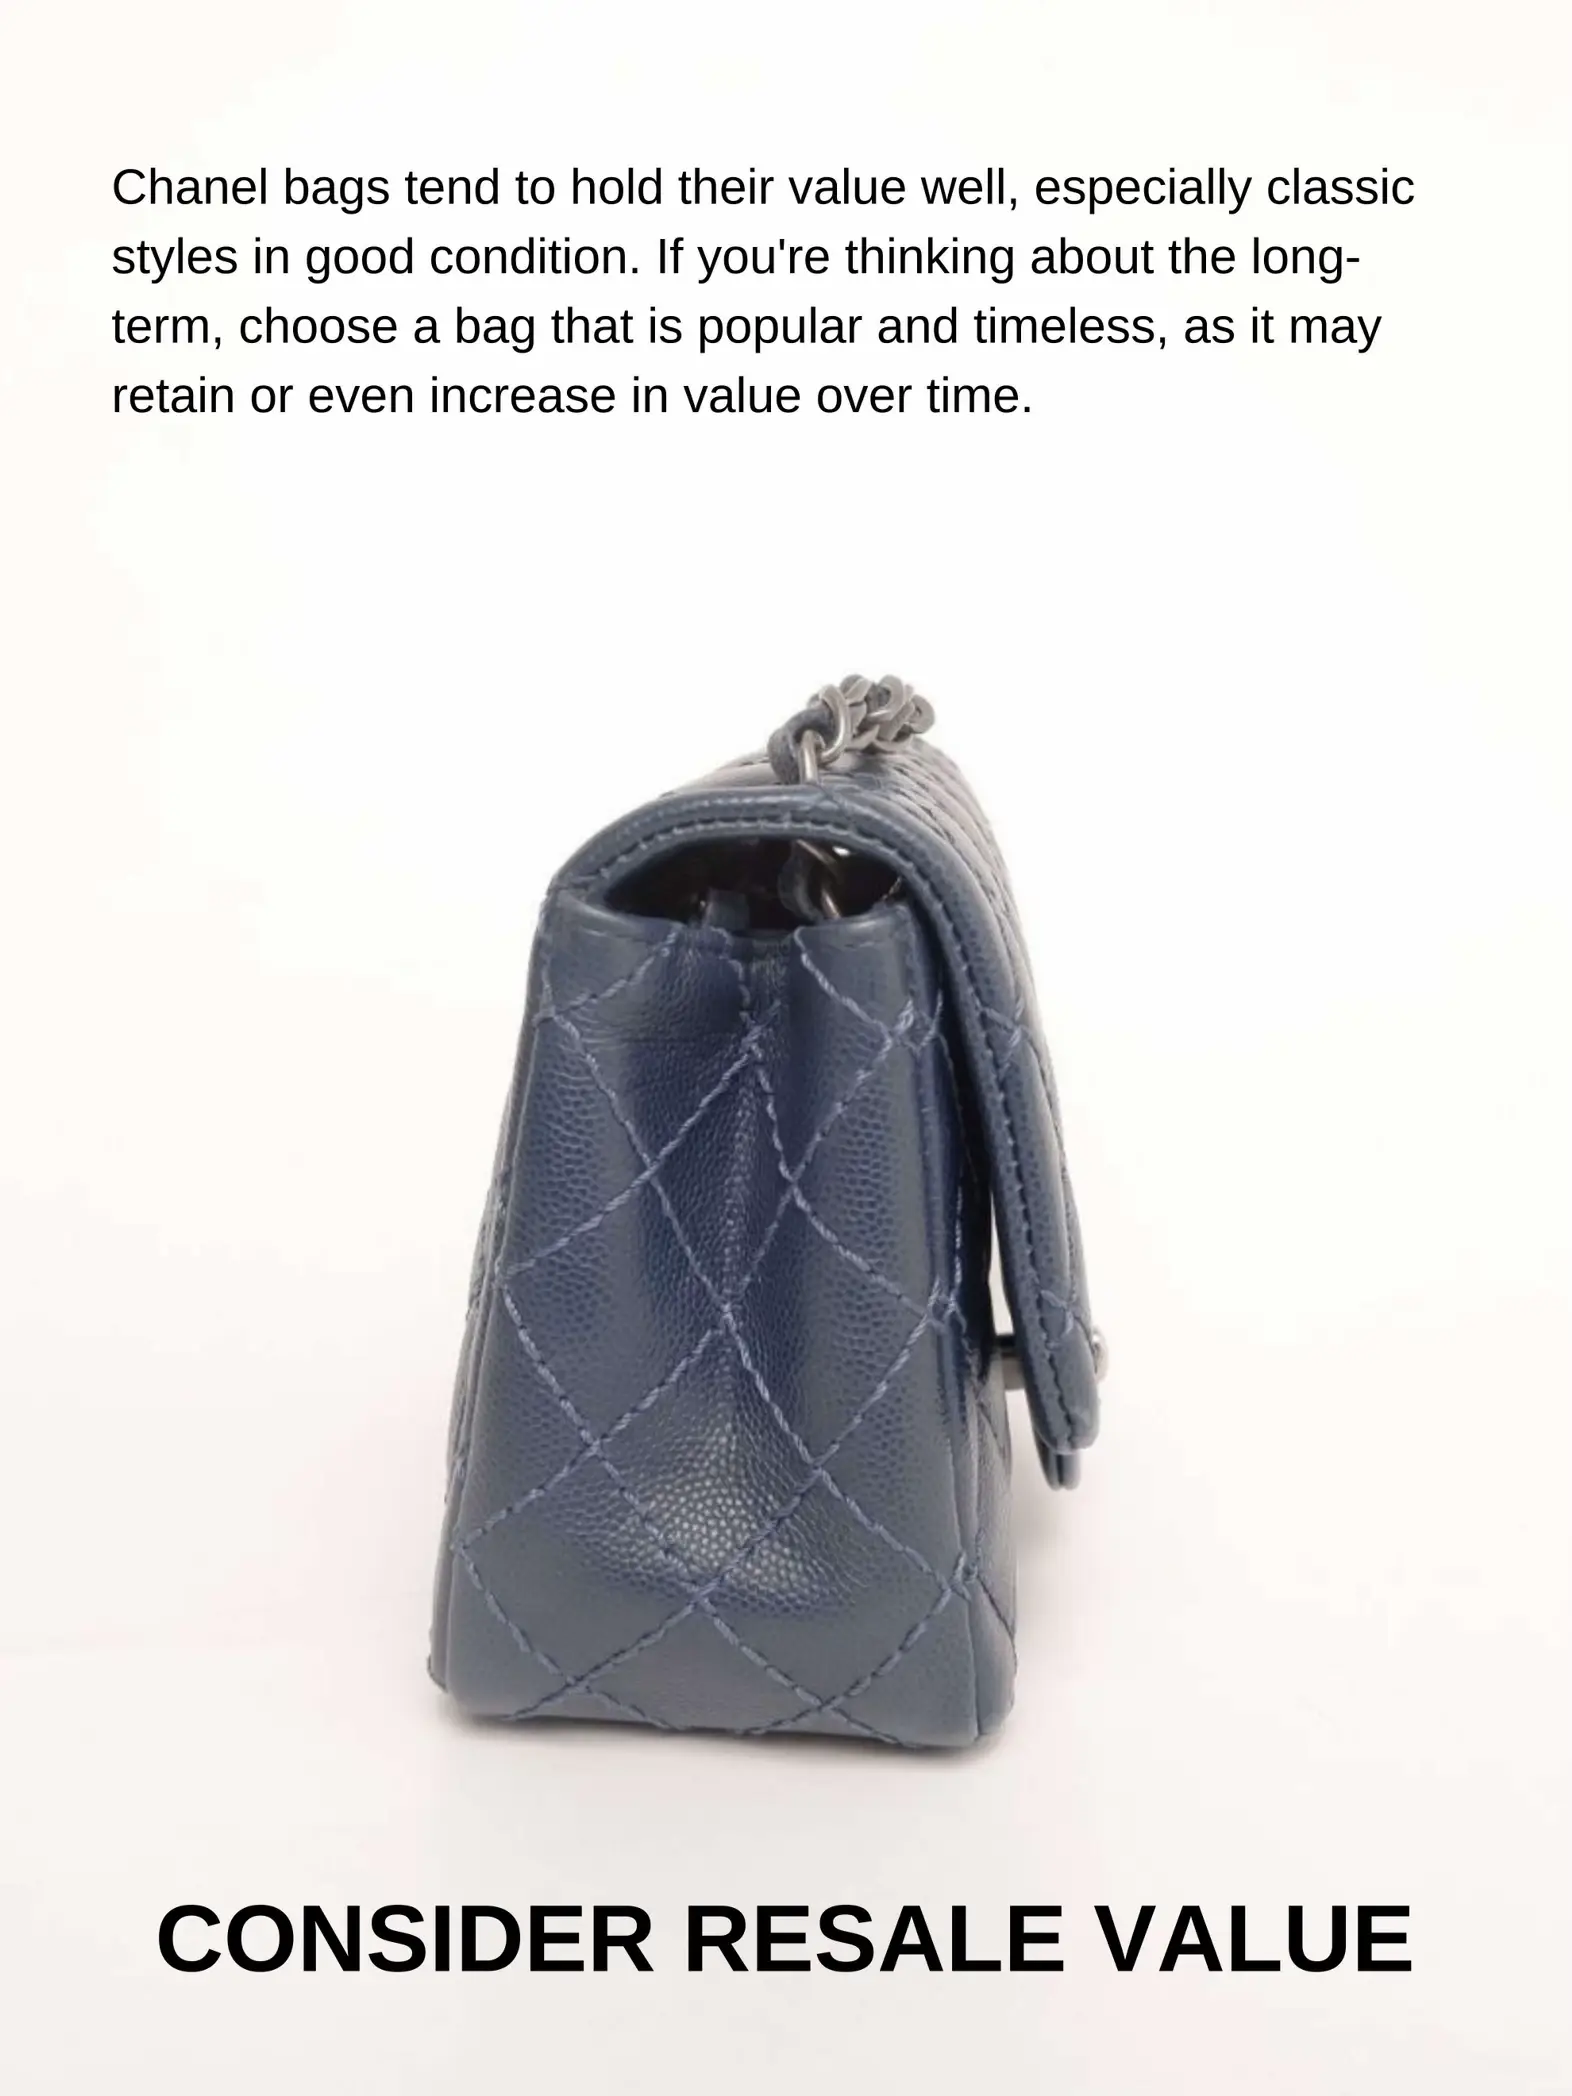 Want to Buy Your 1st Chanel Bag? Read This!, Galeri diposting oleh  Natasshanjani